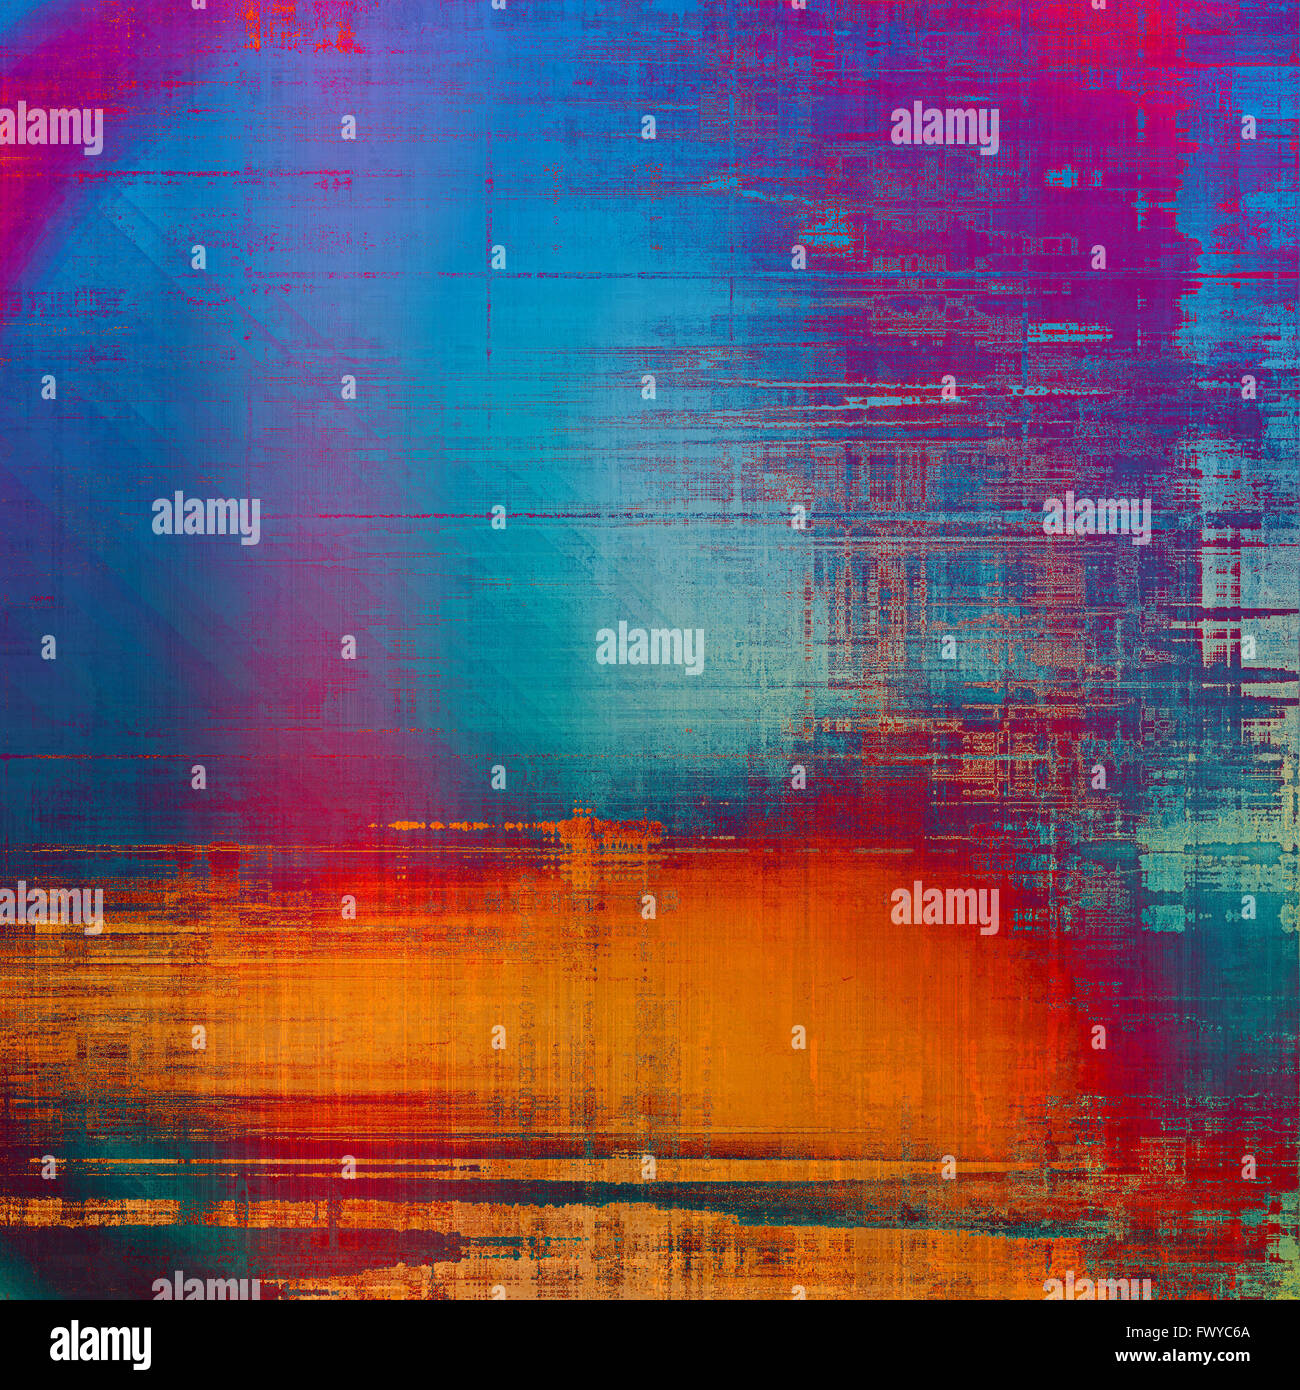 Abstract distressed grunge background. Avec différents motifs couleur : jaune (beige) ; bleu ; rouge (orange), pourpre (violet) ; rose Banque D'Images